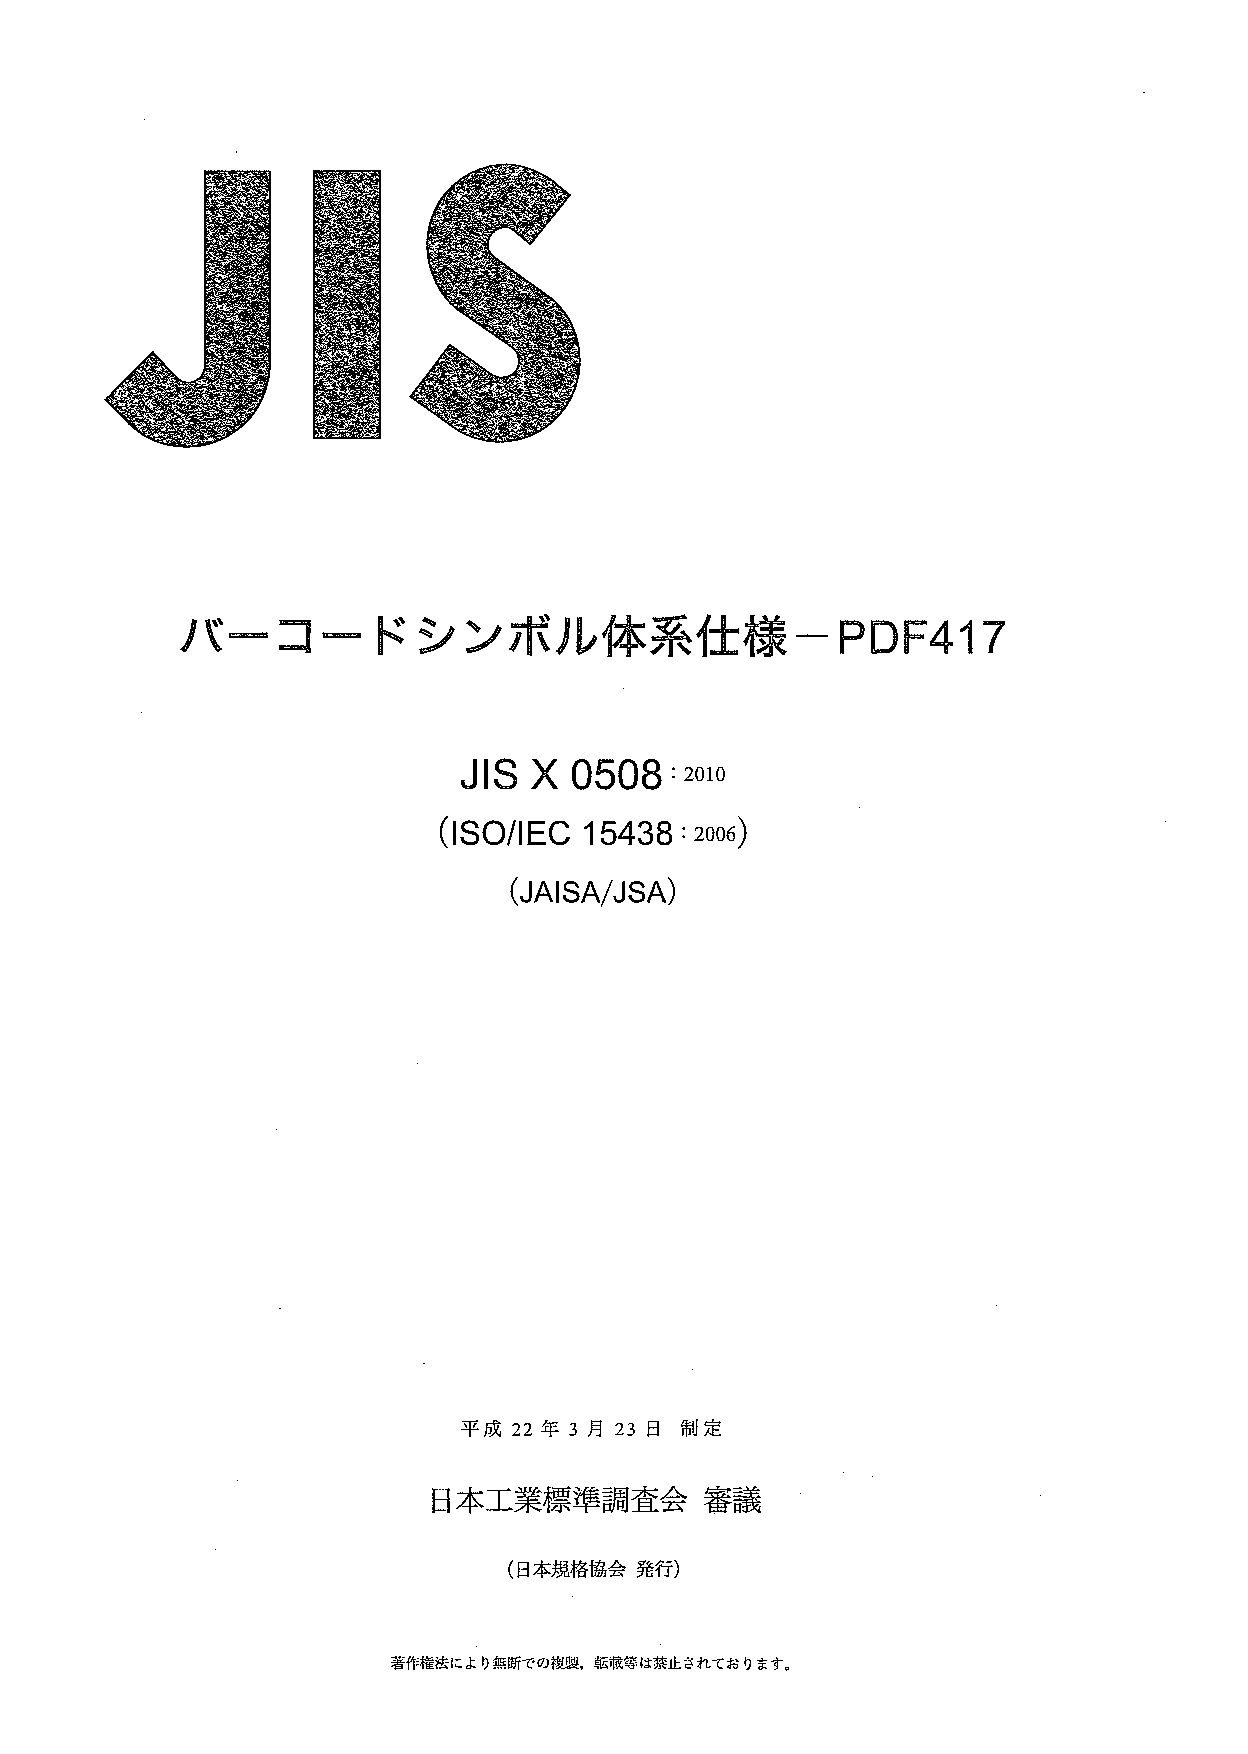 JIS X 0508:2010封面图